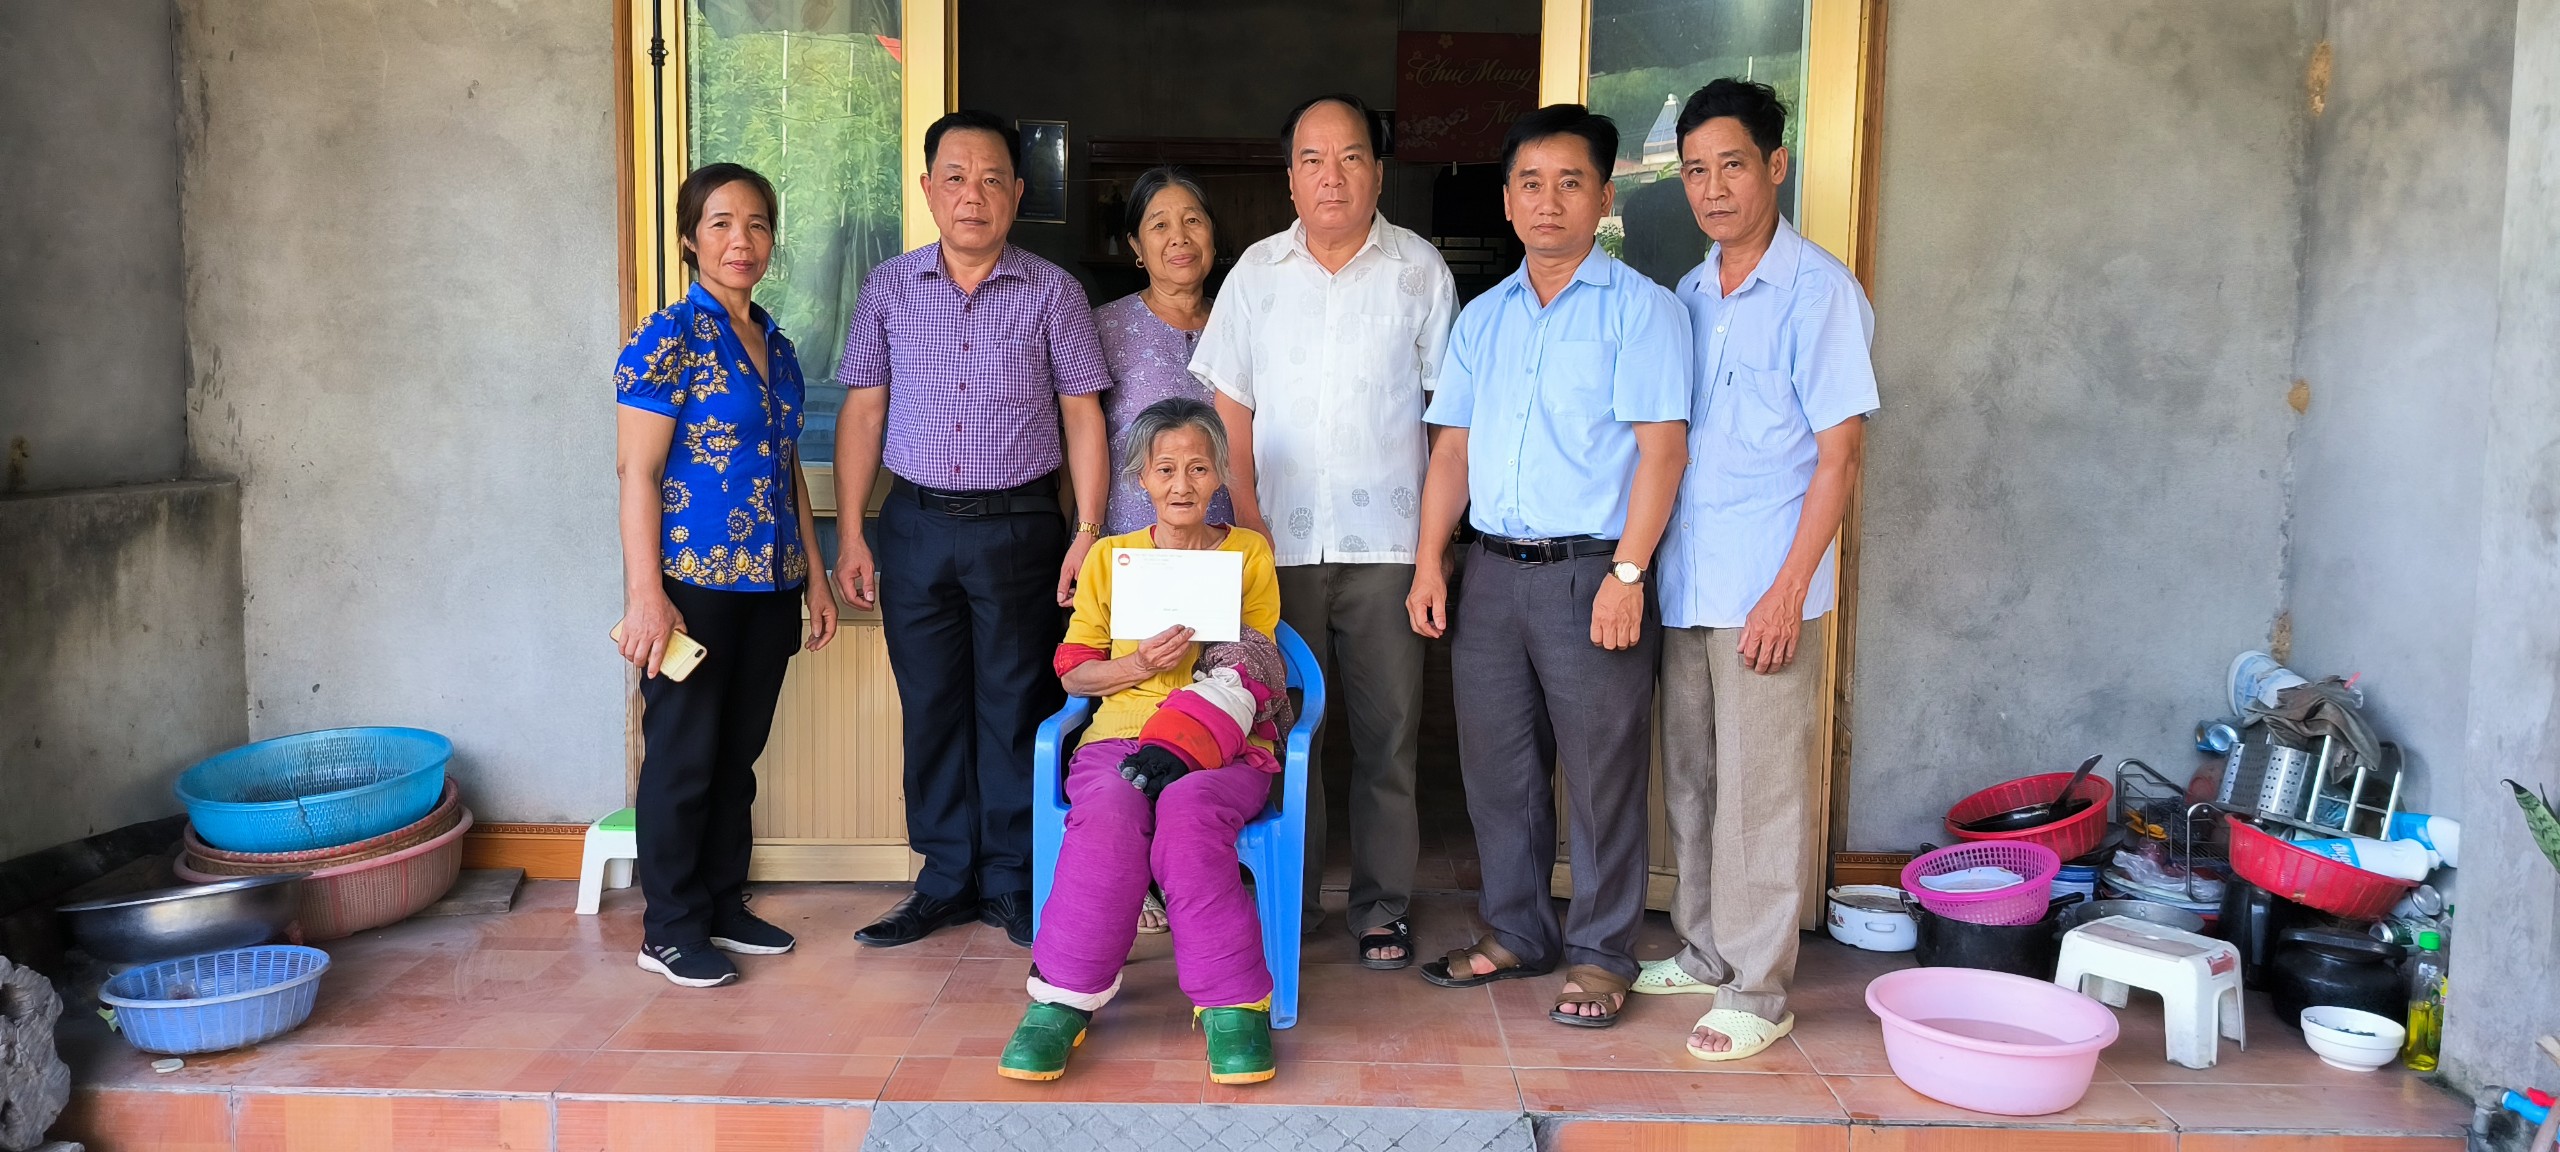 Ủy ban MTTQ thị trấn Na Hang hỗ trợ hộ nghèo sửa chữa nhà ở